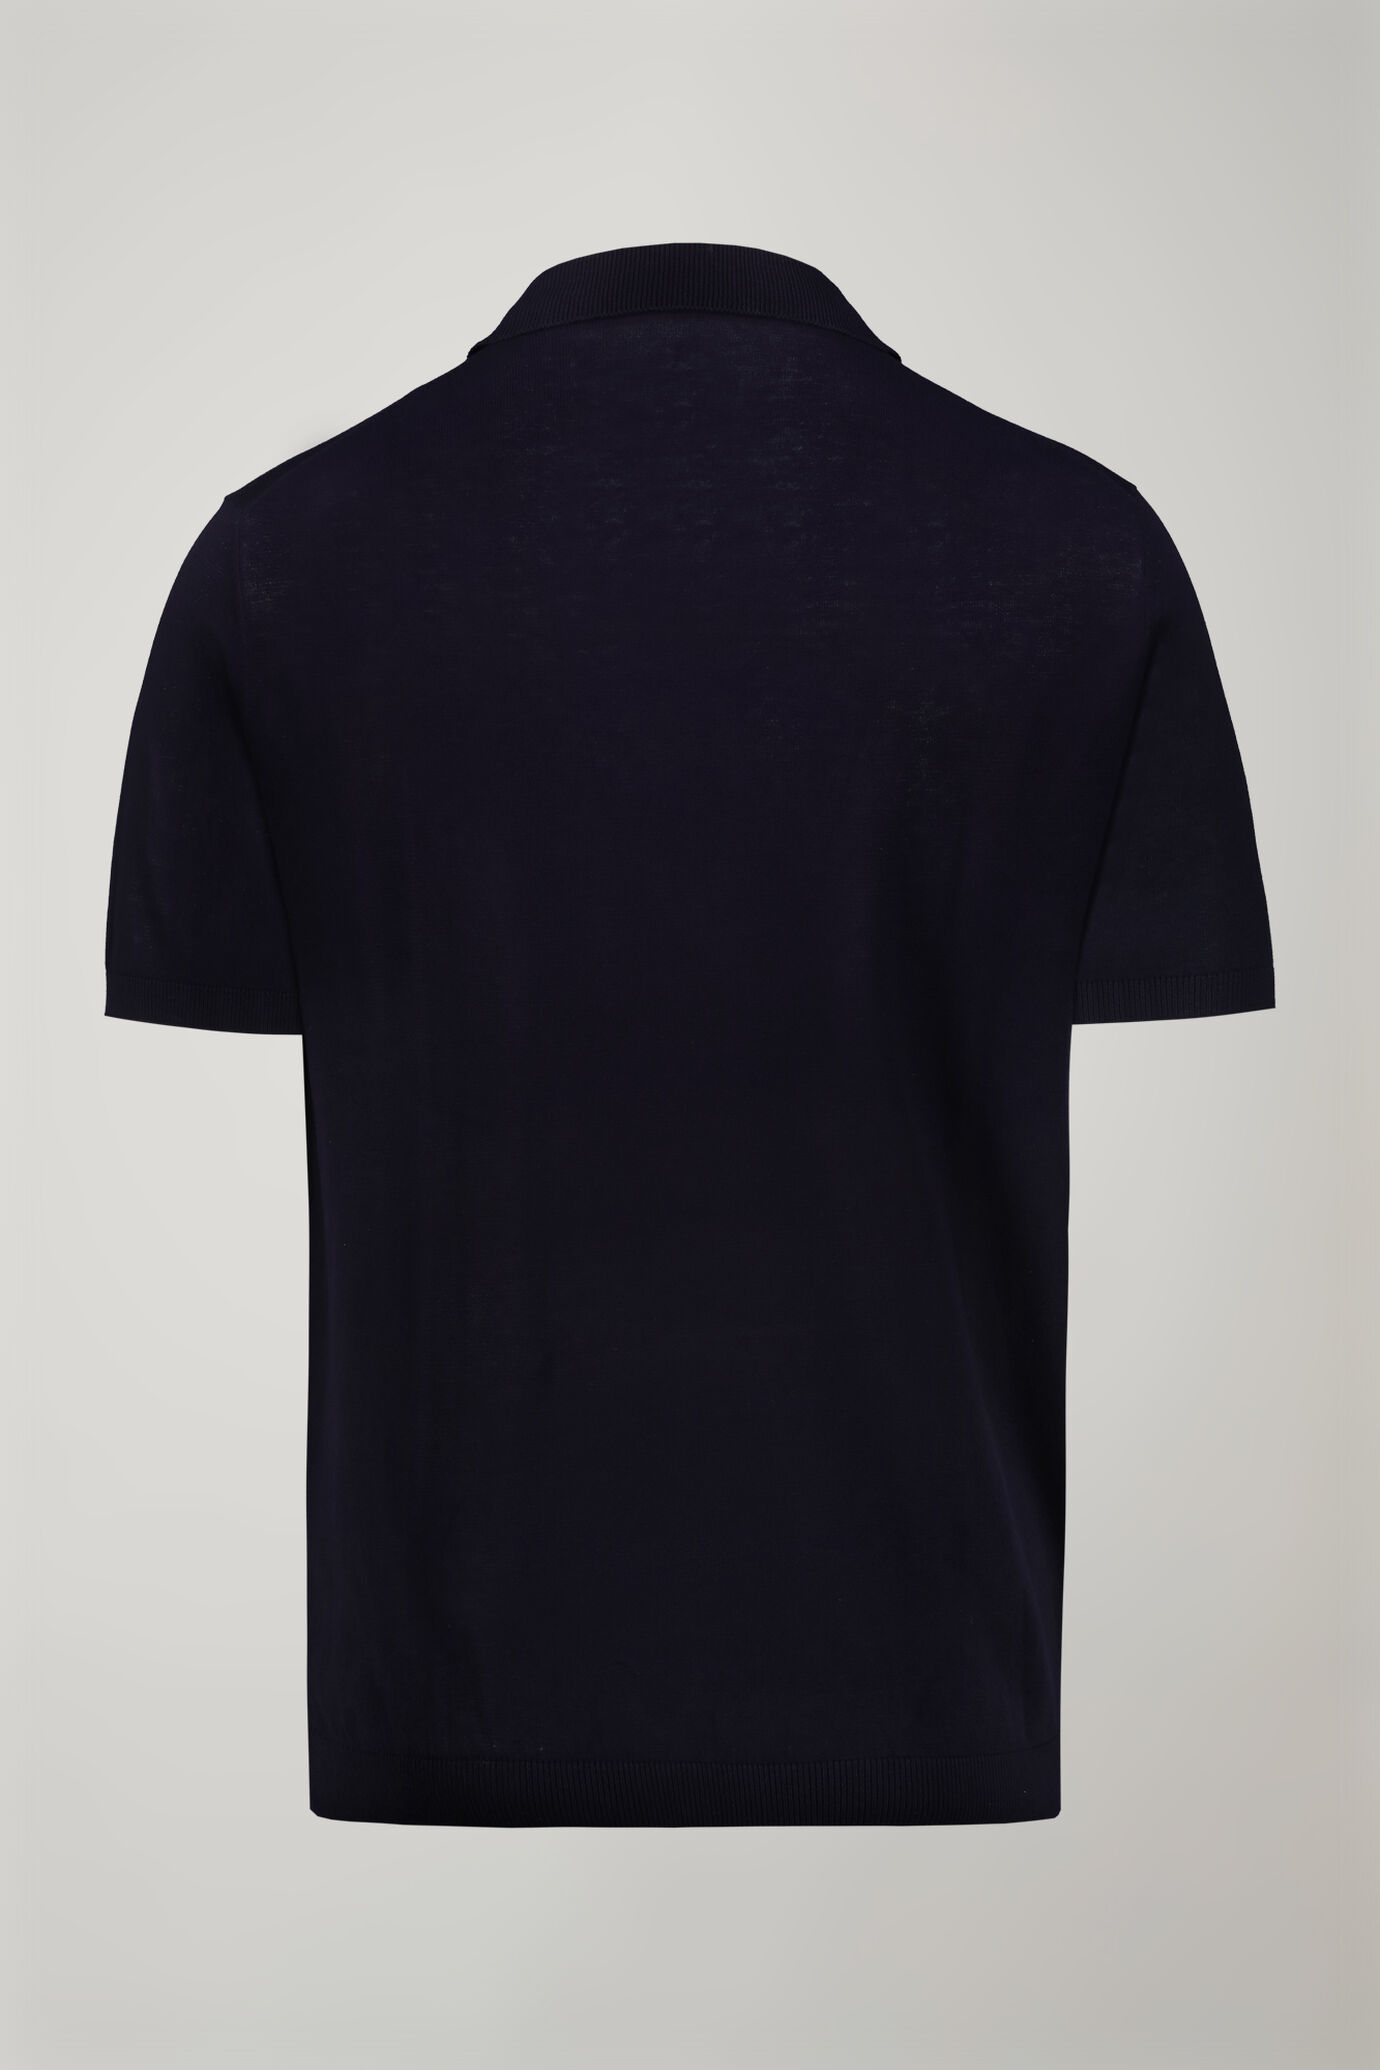 Herren-Poloshirt mit Rundhalsausschnitt und kurzen Ärmeln aus 100 % Baumwolle in normaler Passform image number 5